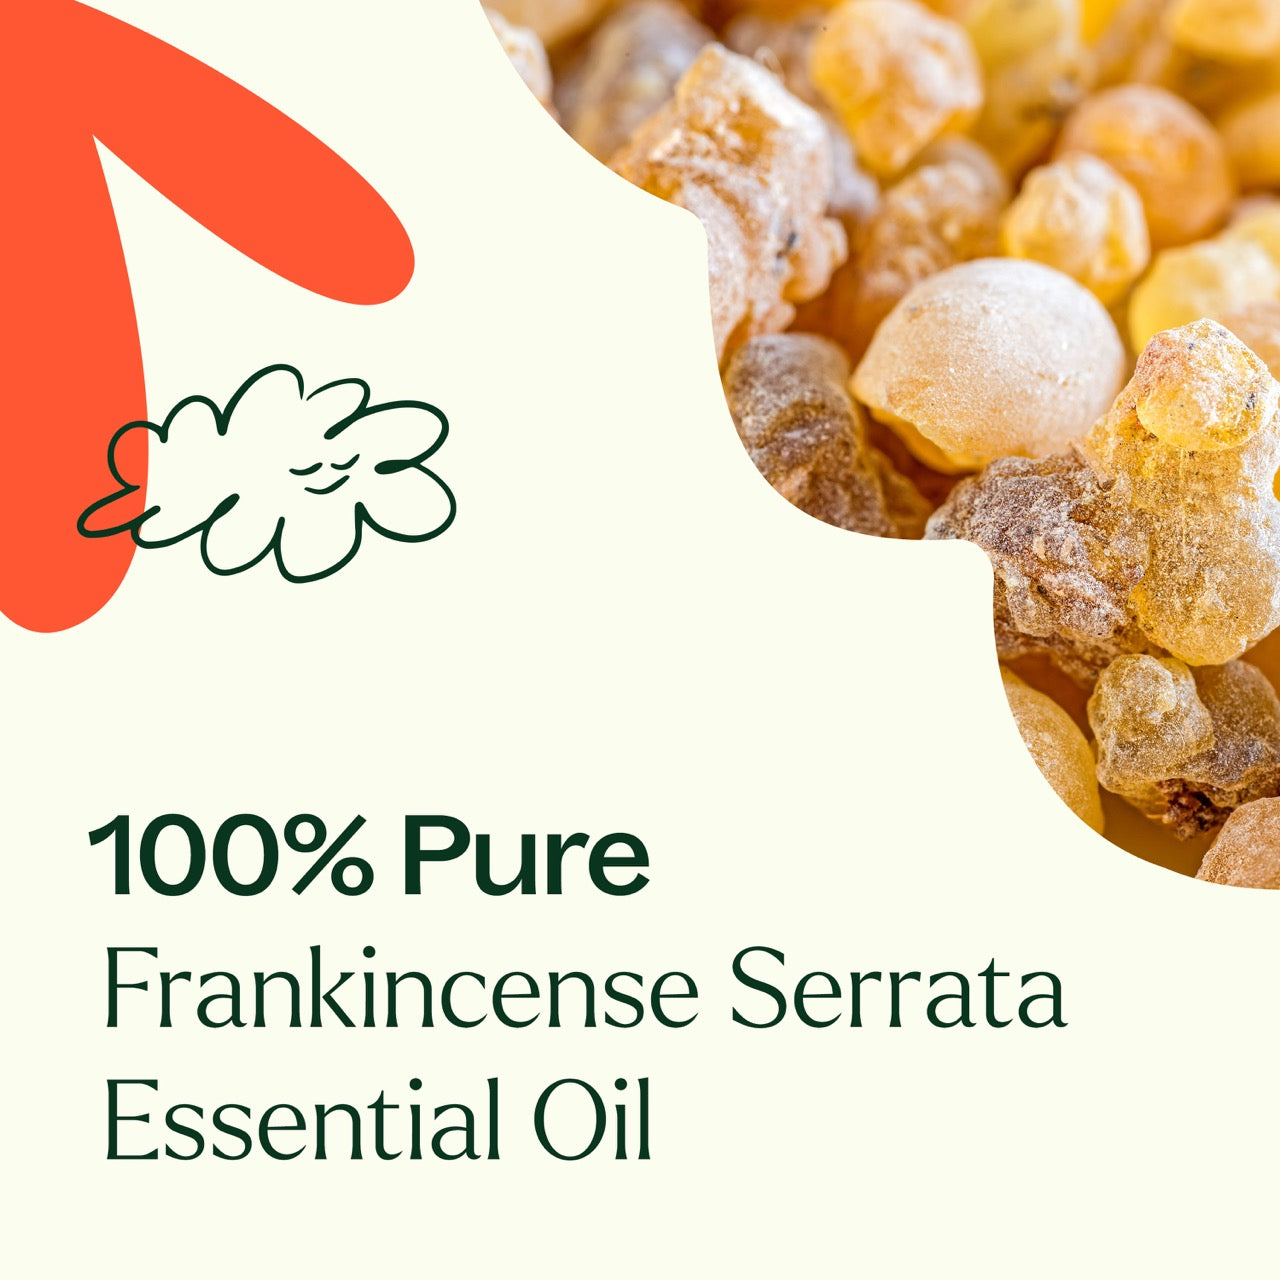 100% pure Frankincense Serrata Essential Oil